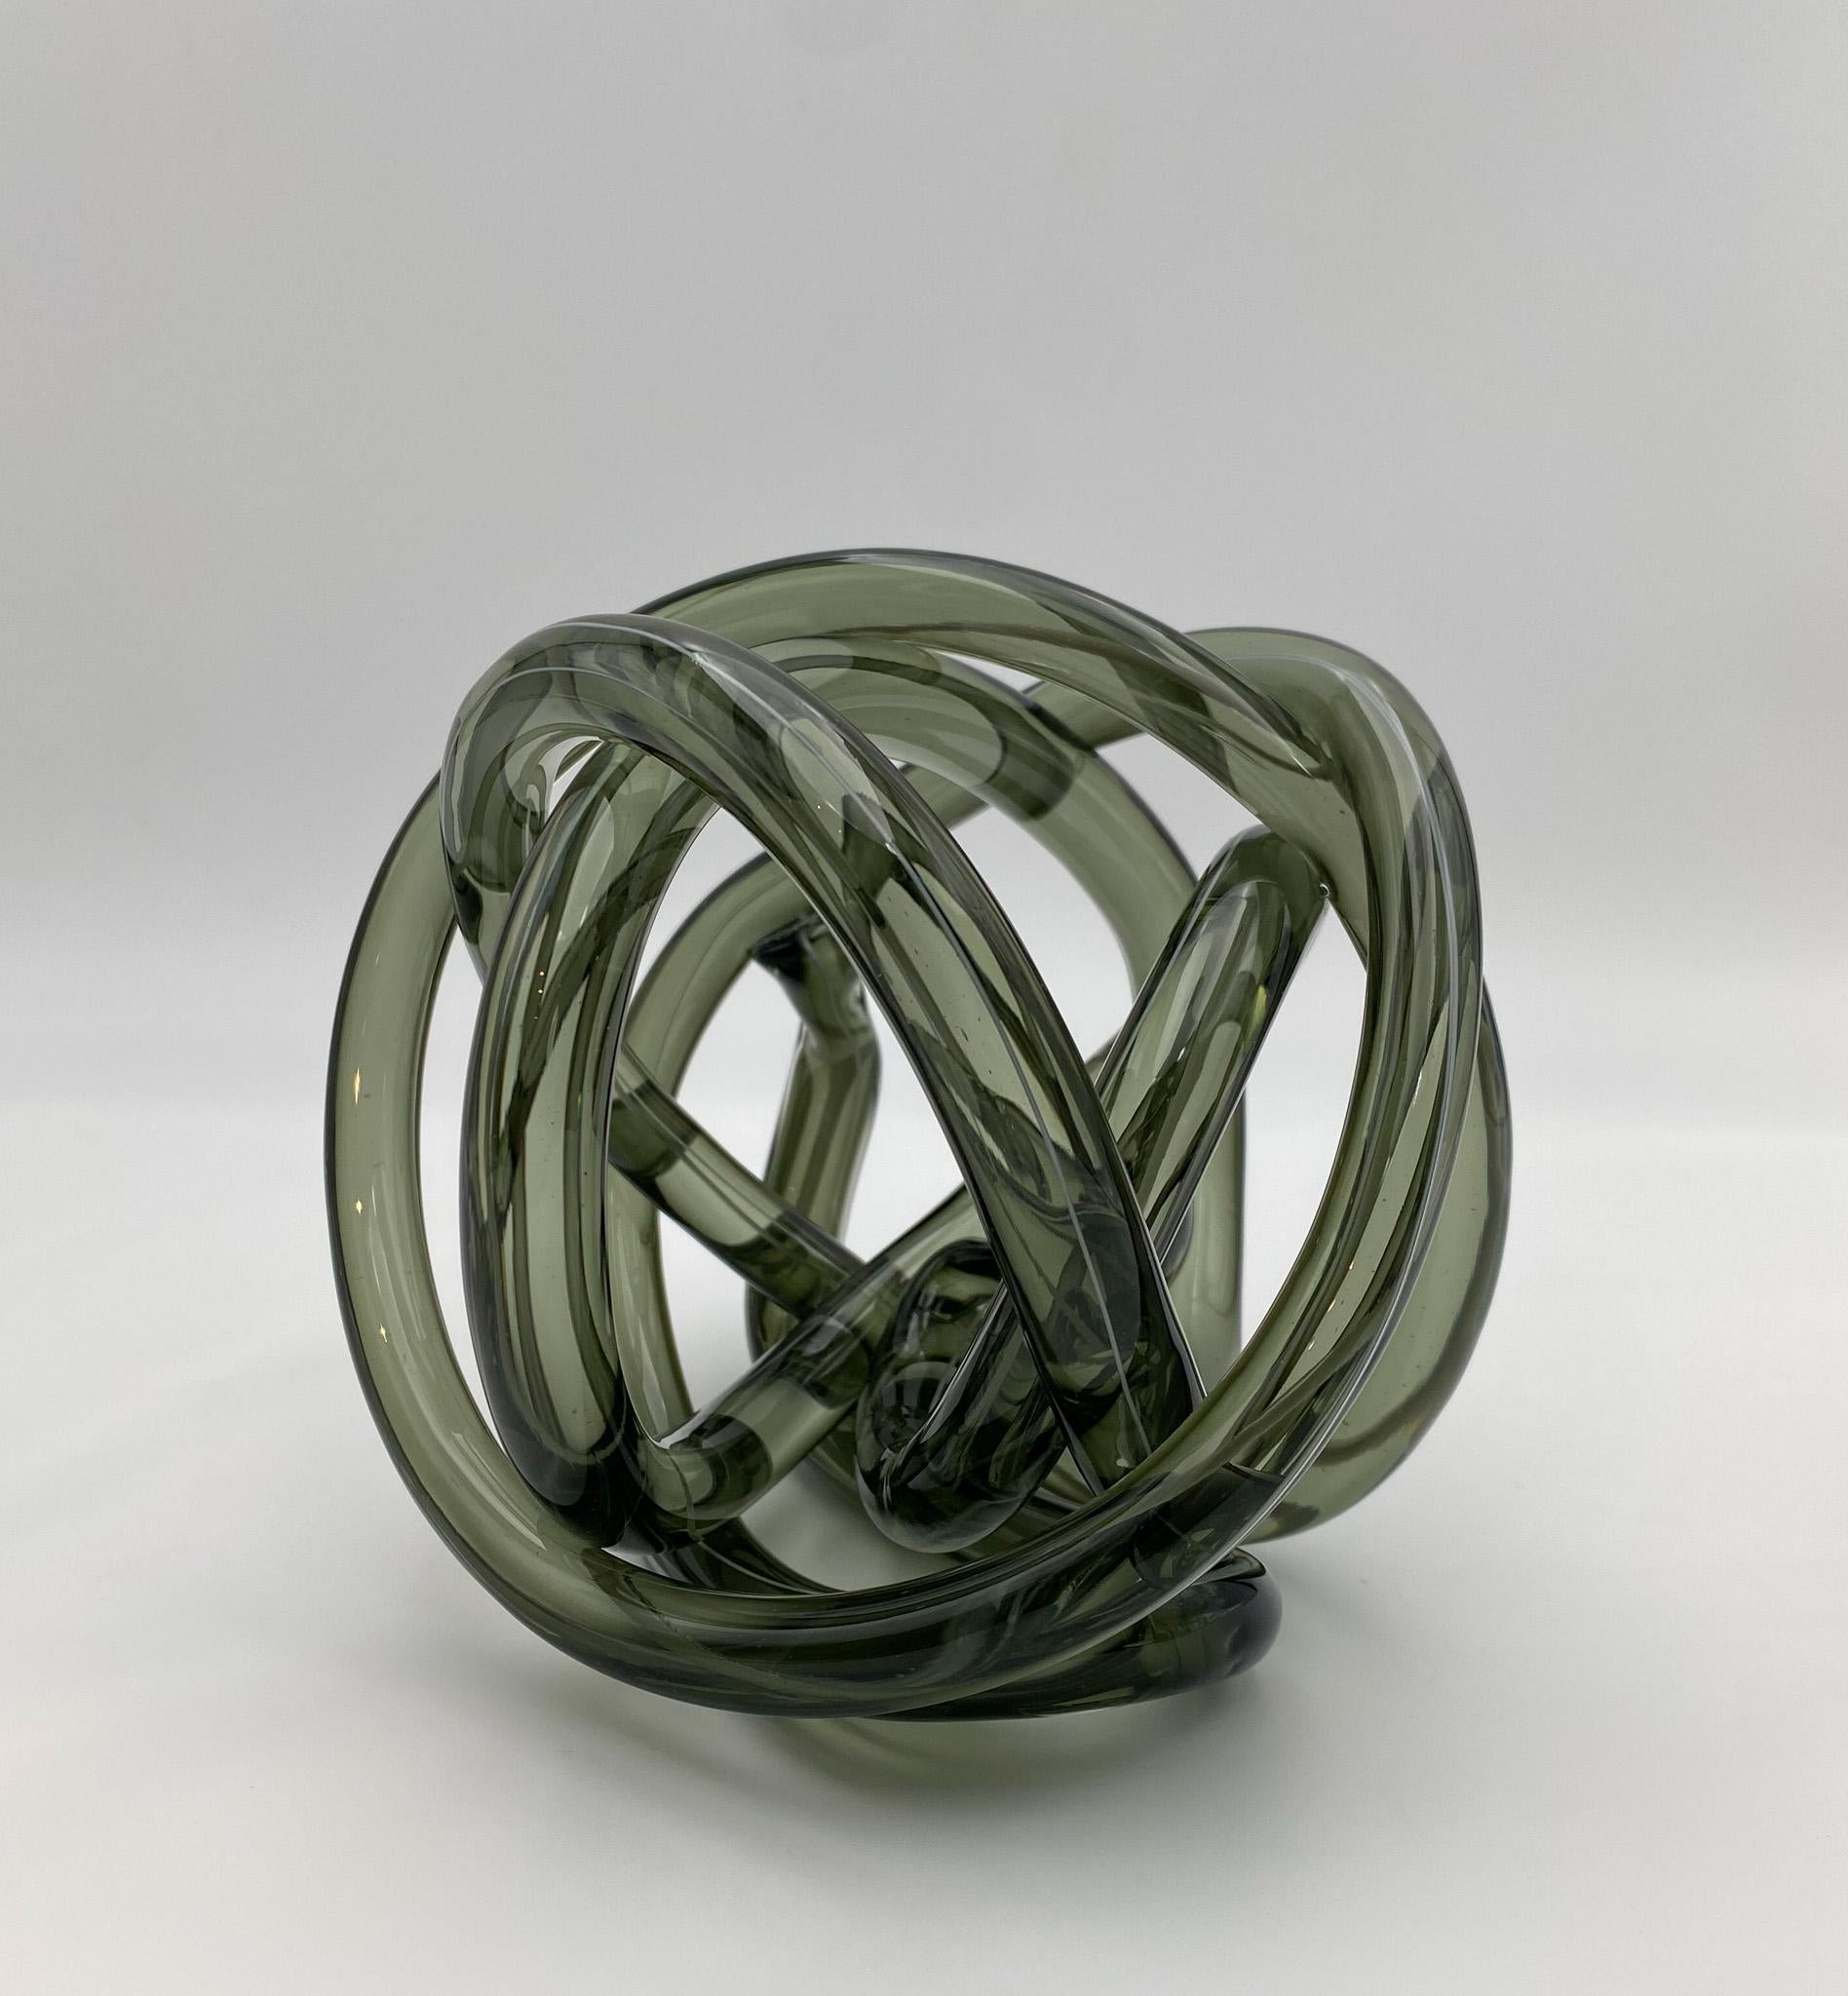 Abstract Art Glass Knot Sculpture  1